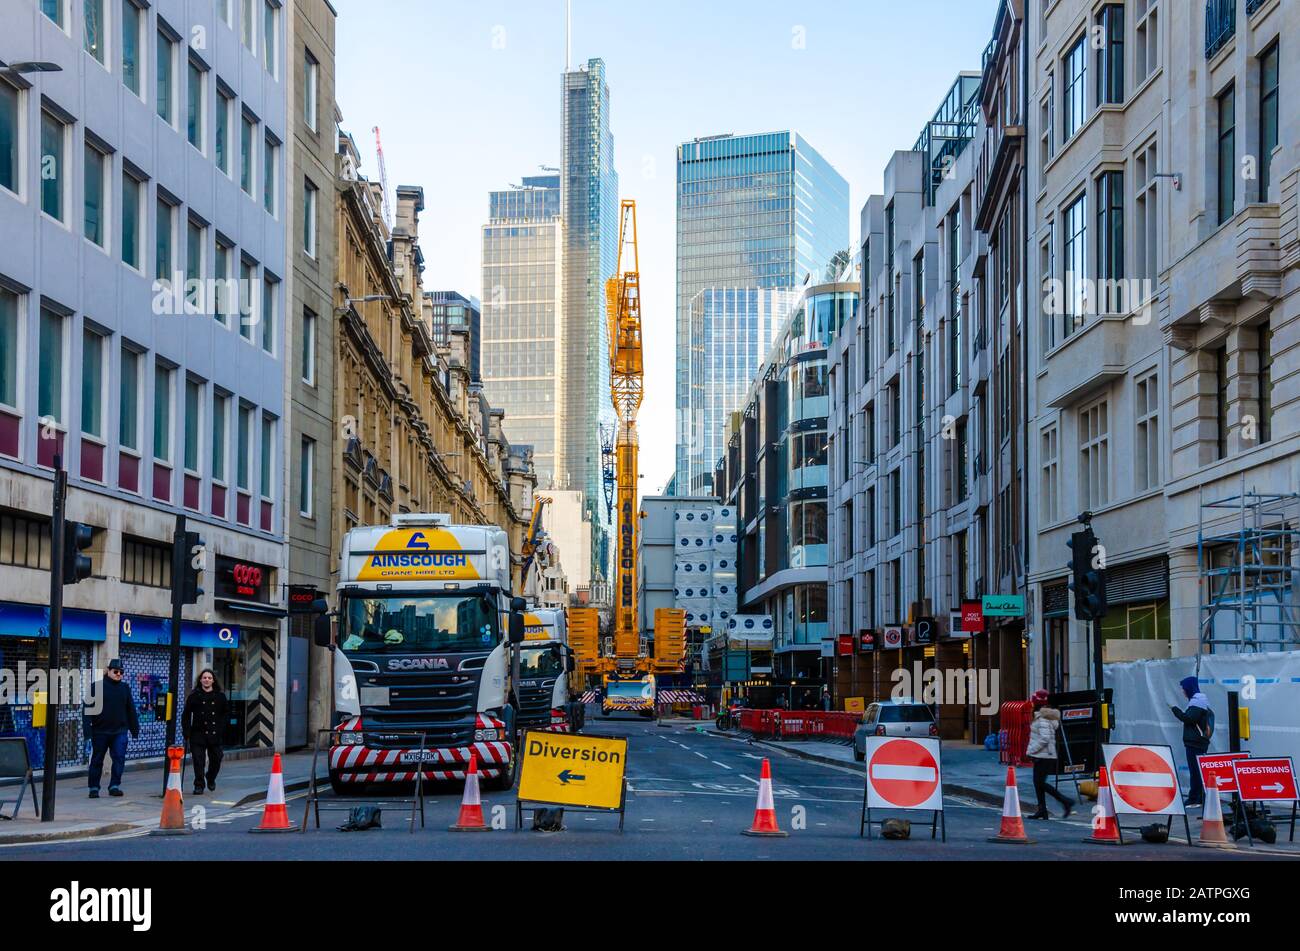 Die Straße "London Wall" ist gesperrt, während ein Kran bei Bauarbeiten eingesetzt wird. Stockfoto